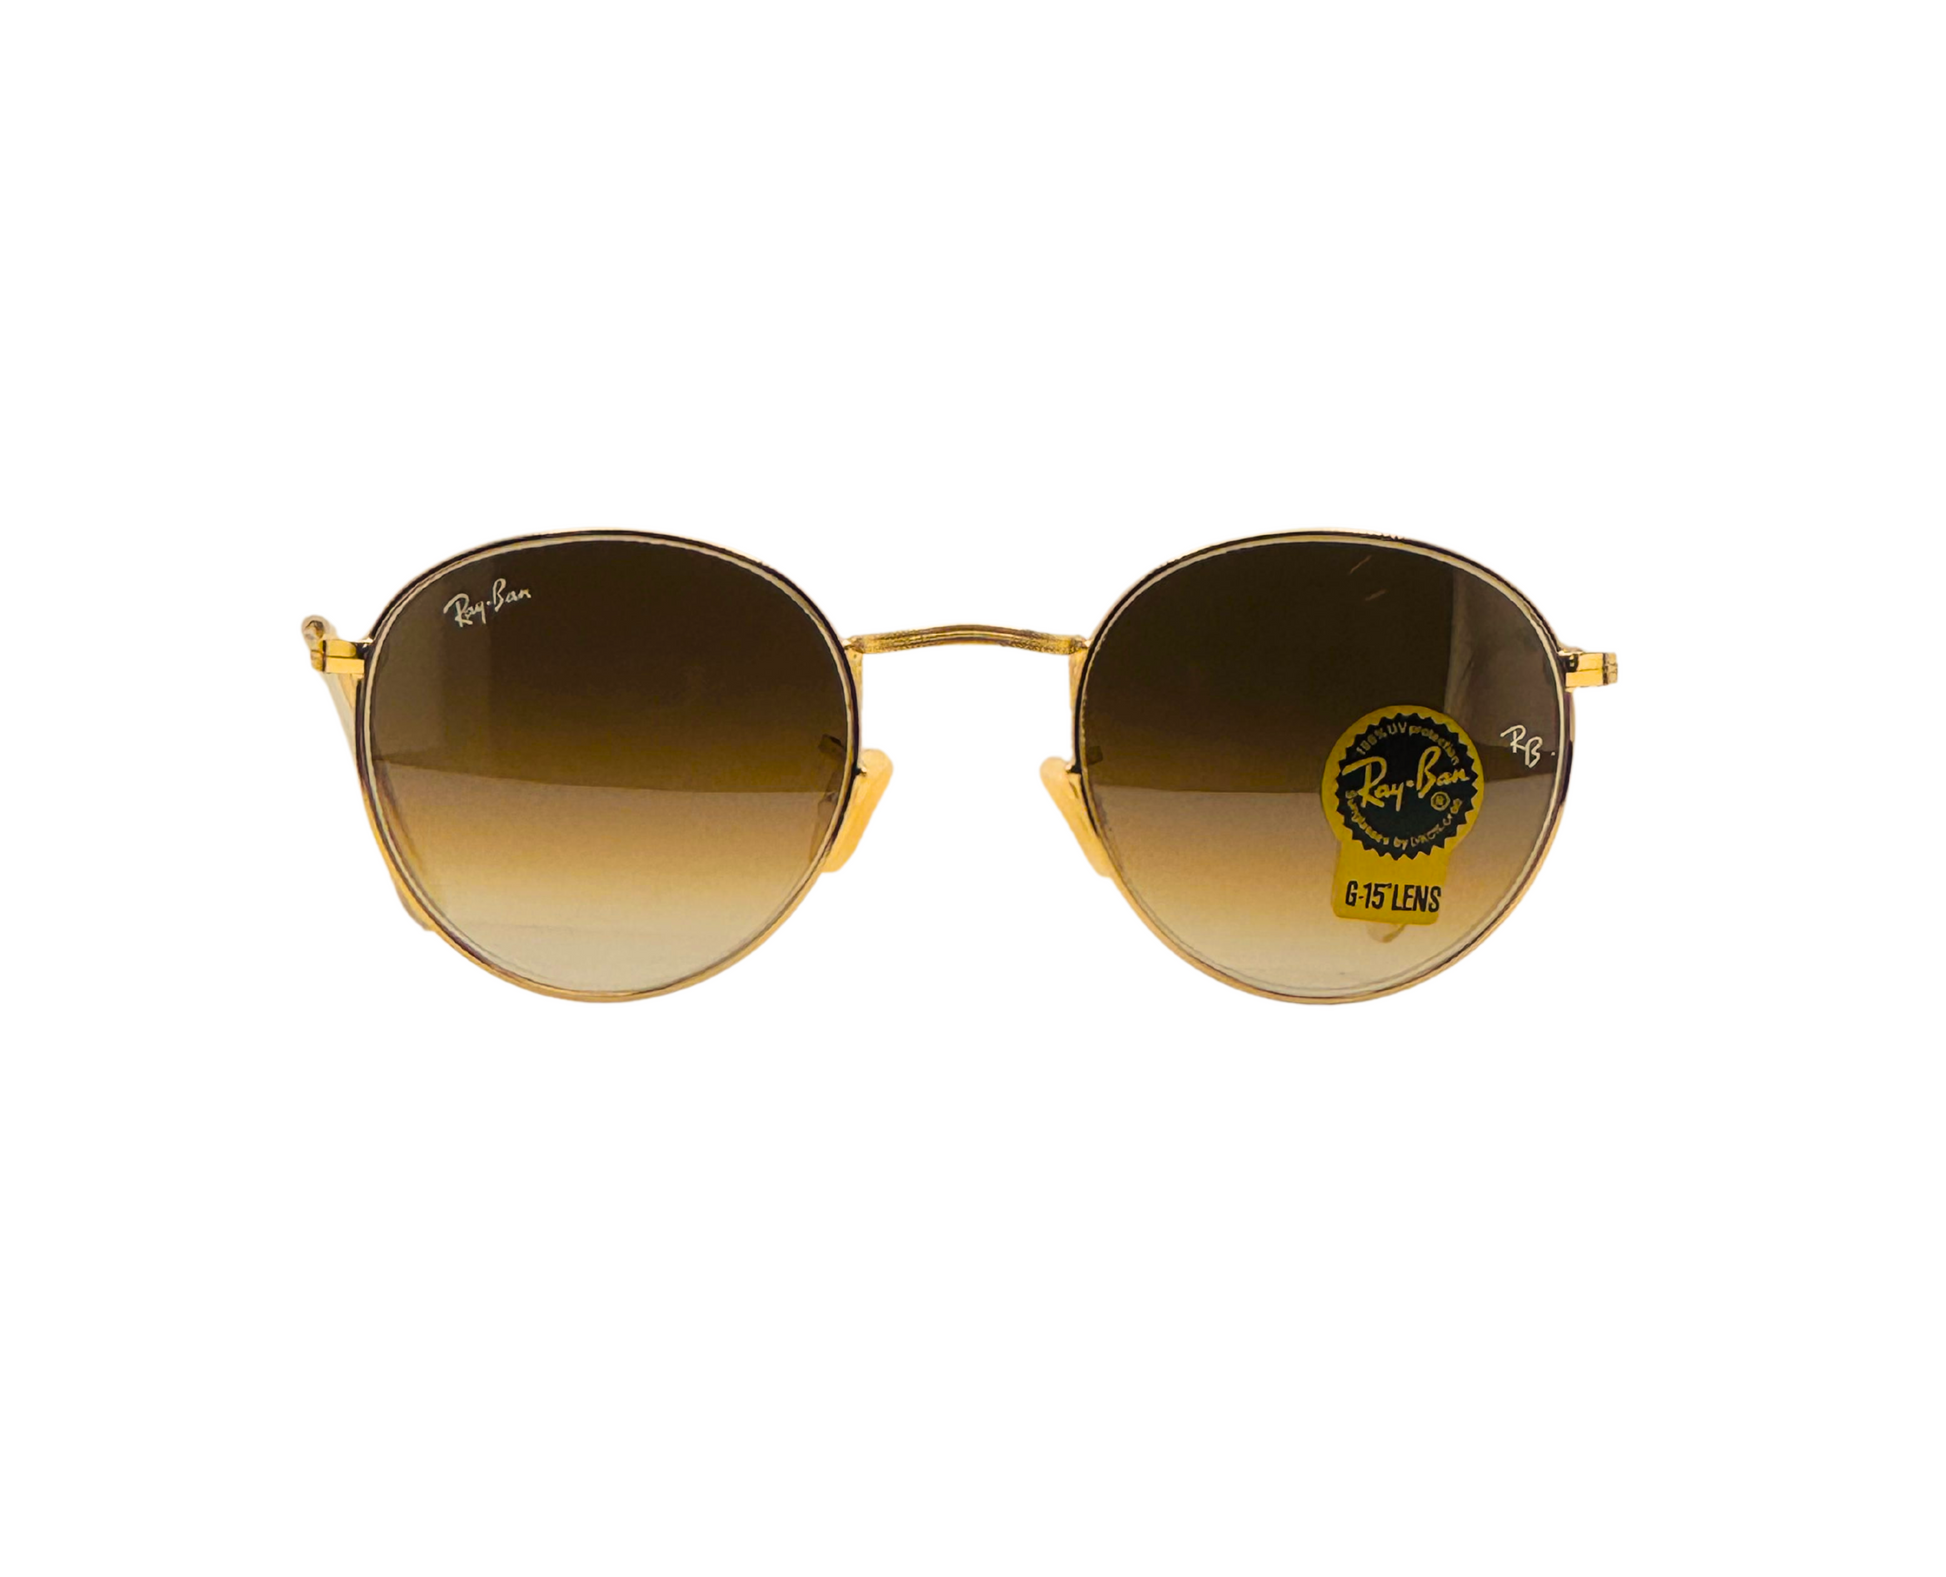 NS Deluxe - 3447 - Golden/Brown - Sunglasses